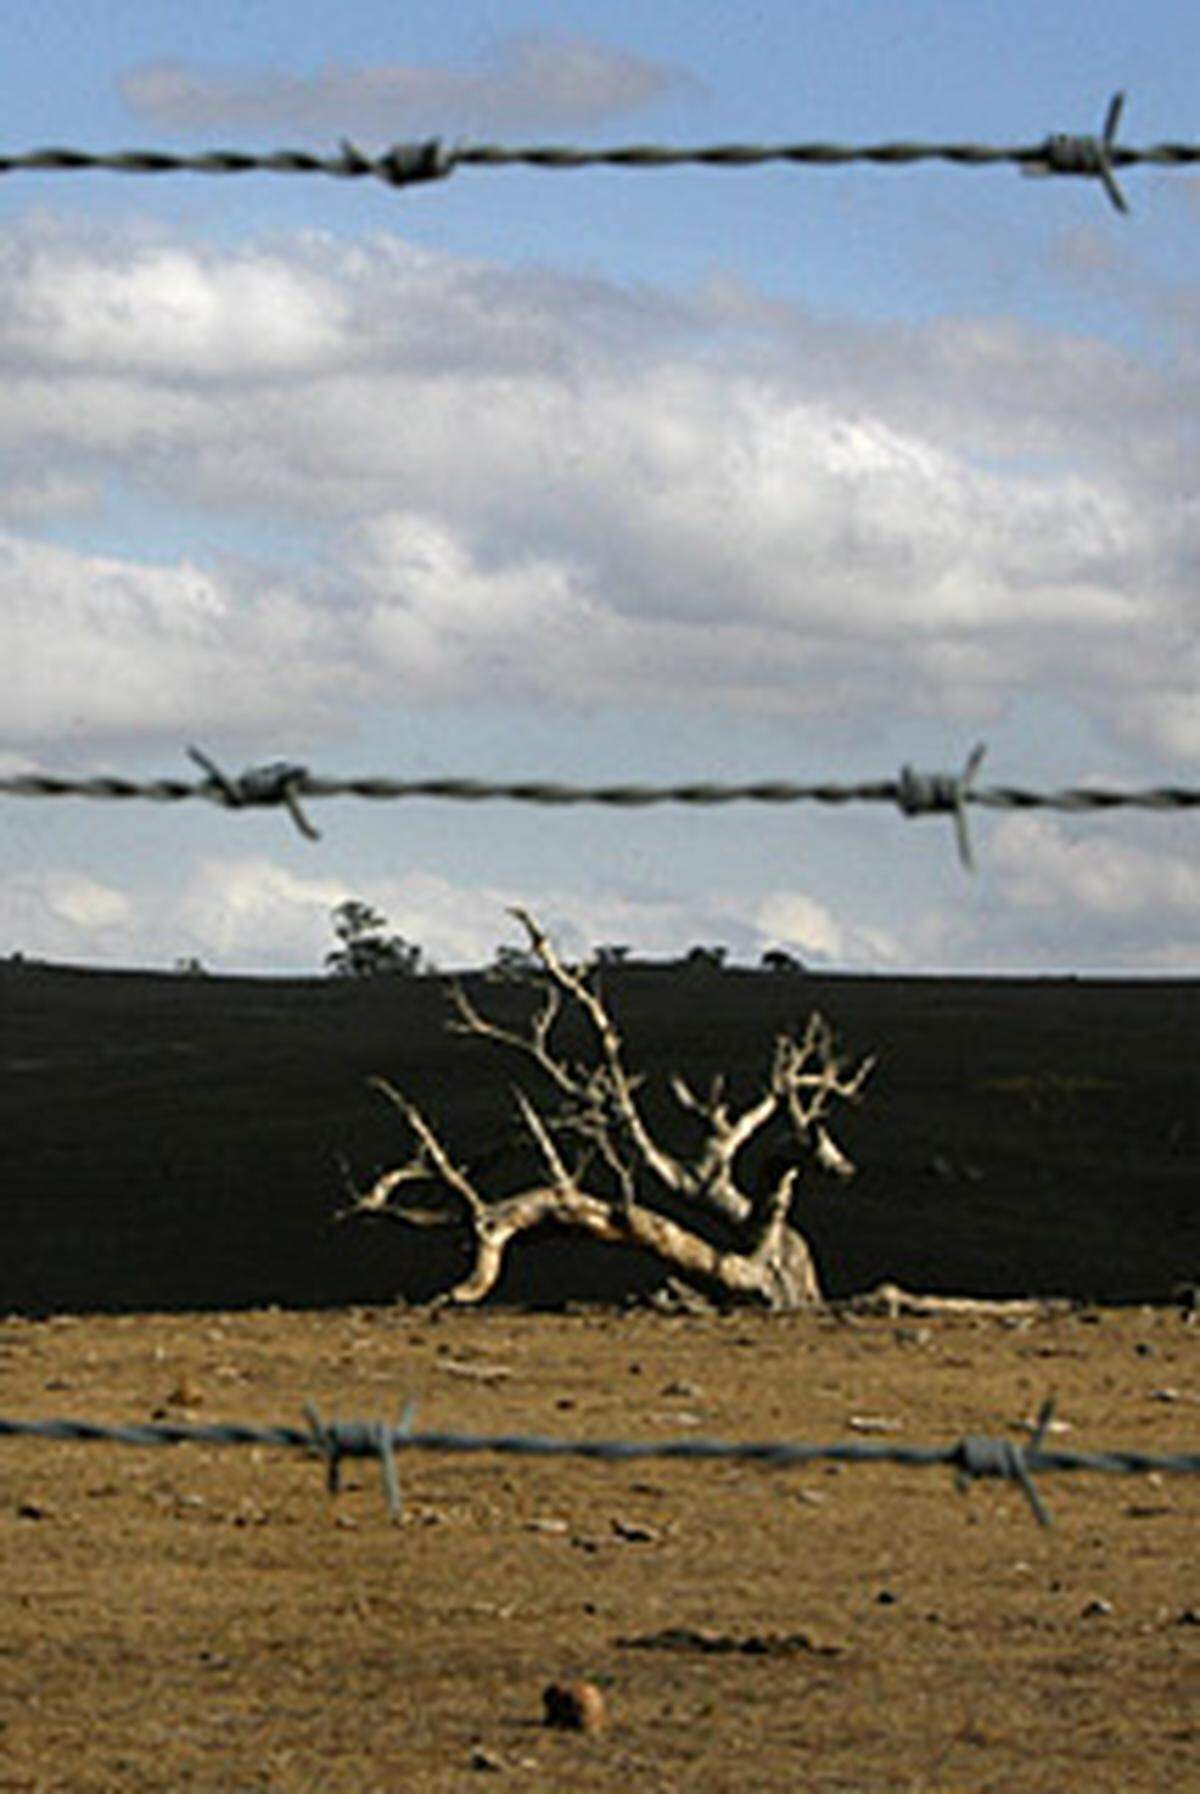 Der "Dingozaun" in Australien überbietet China um stolze 2000 km. Mit 5530 km ist der Zaun somit die längste Grenzbefestigung der Welt. Noch nie davon gehört? Der Zaun wurde Ende des 19. Jahrhunderts begonnen, um Dingos von Schafen fernzuhalten.